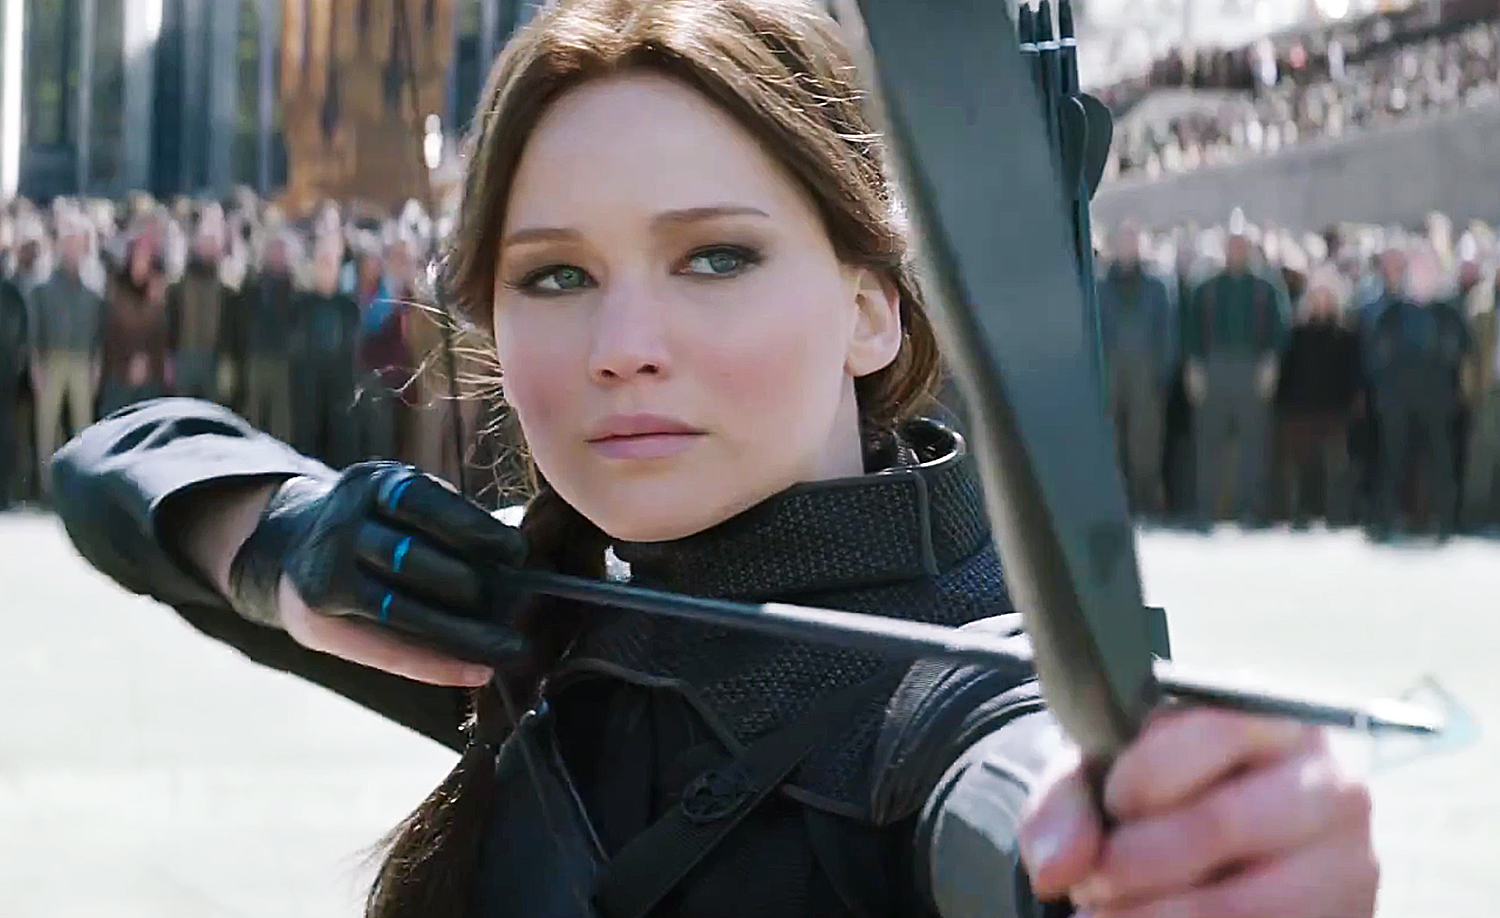 The Hunger Games - Katniss Everdeen / Jennifer - Yorai1212